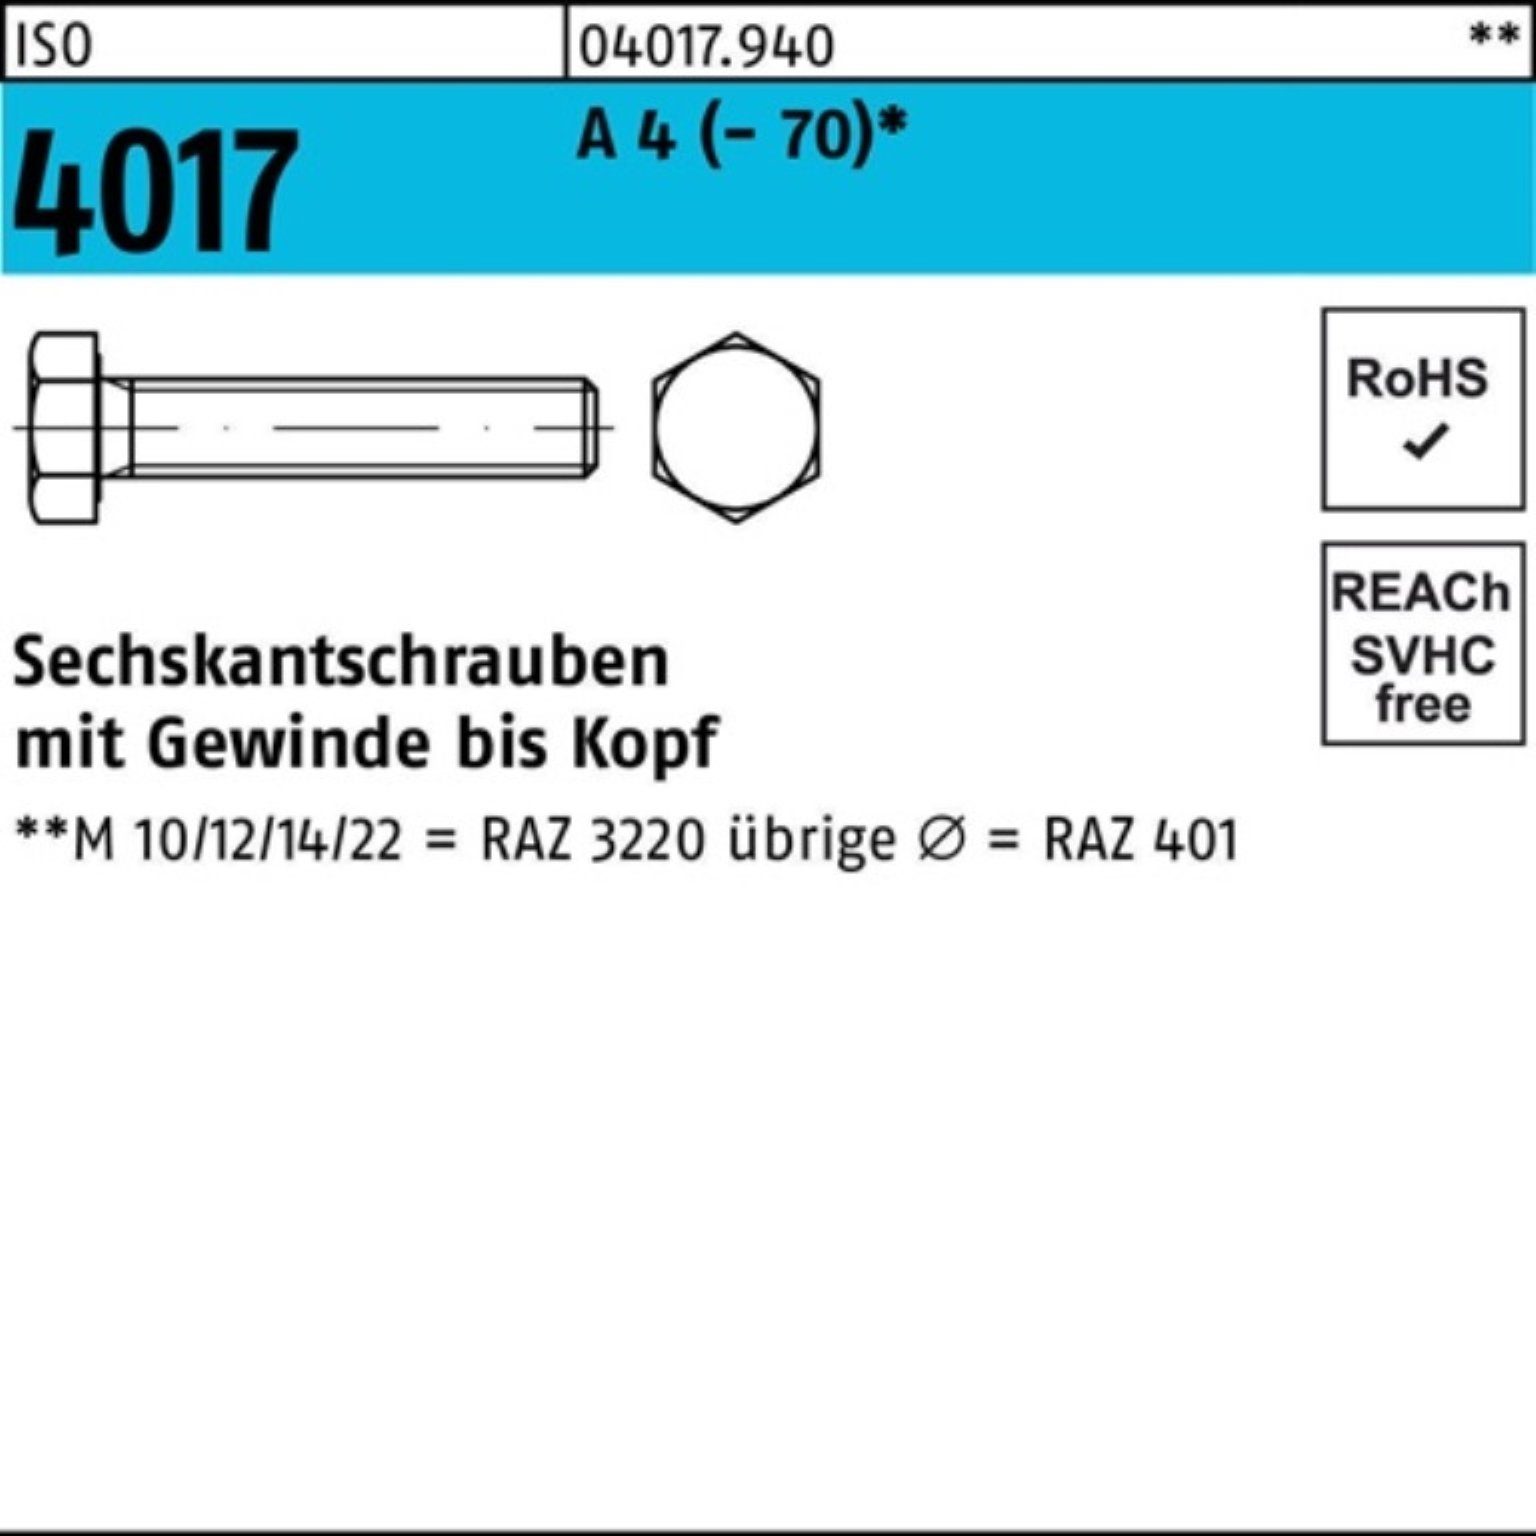 Bufab Sechskantschraube 100er Pack (70) Stück M10x 4 VG A ISO Sechskantschraube 50 100 4017